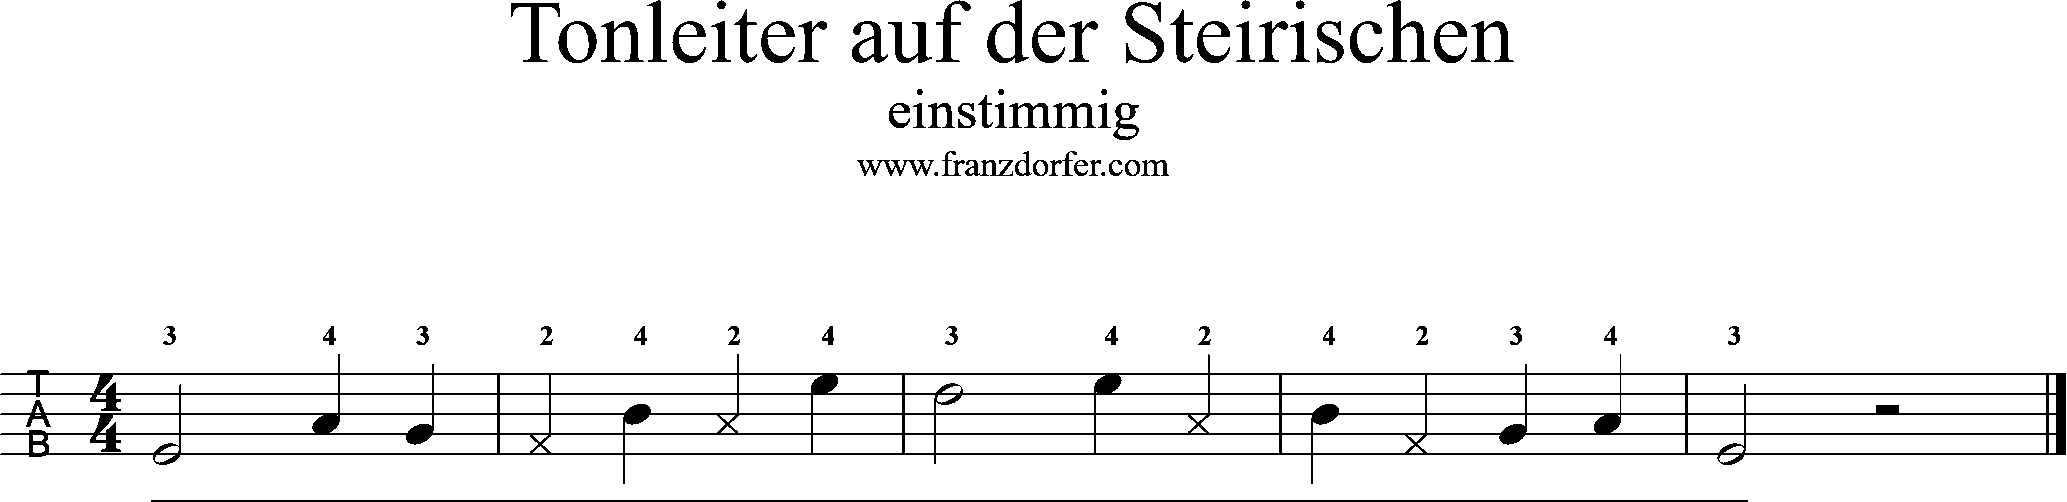 Tonleiter, 1stimmig, steirische Harmonika